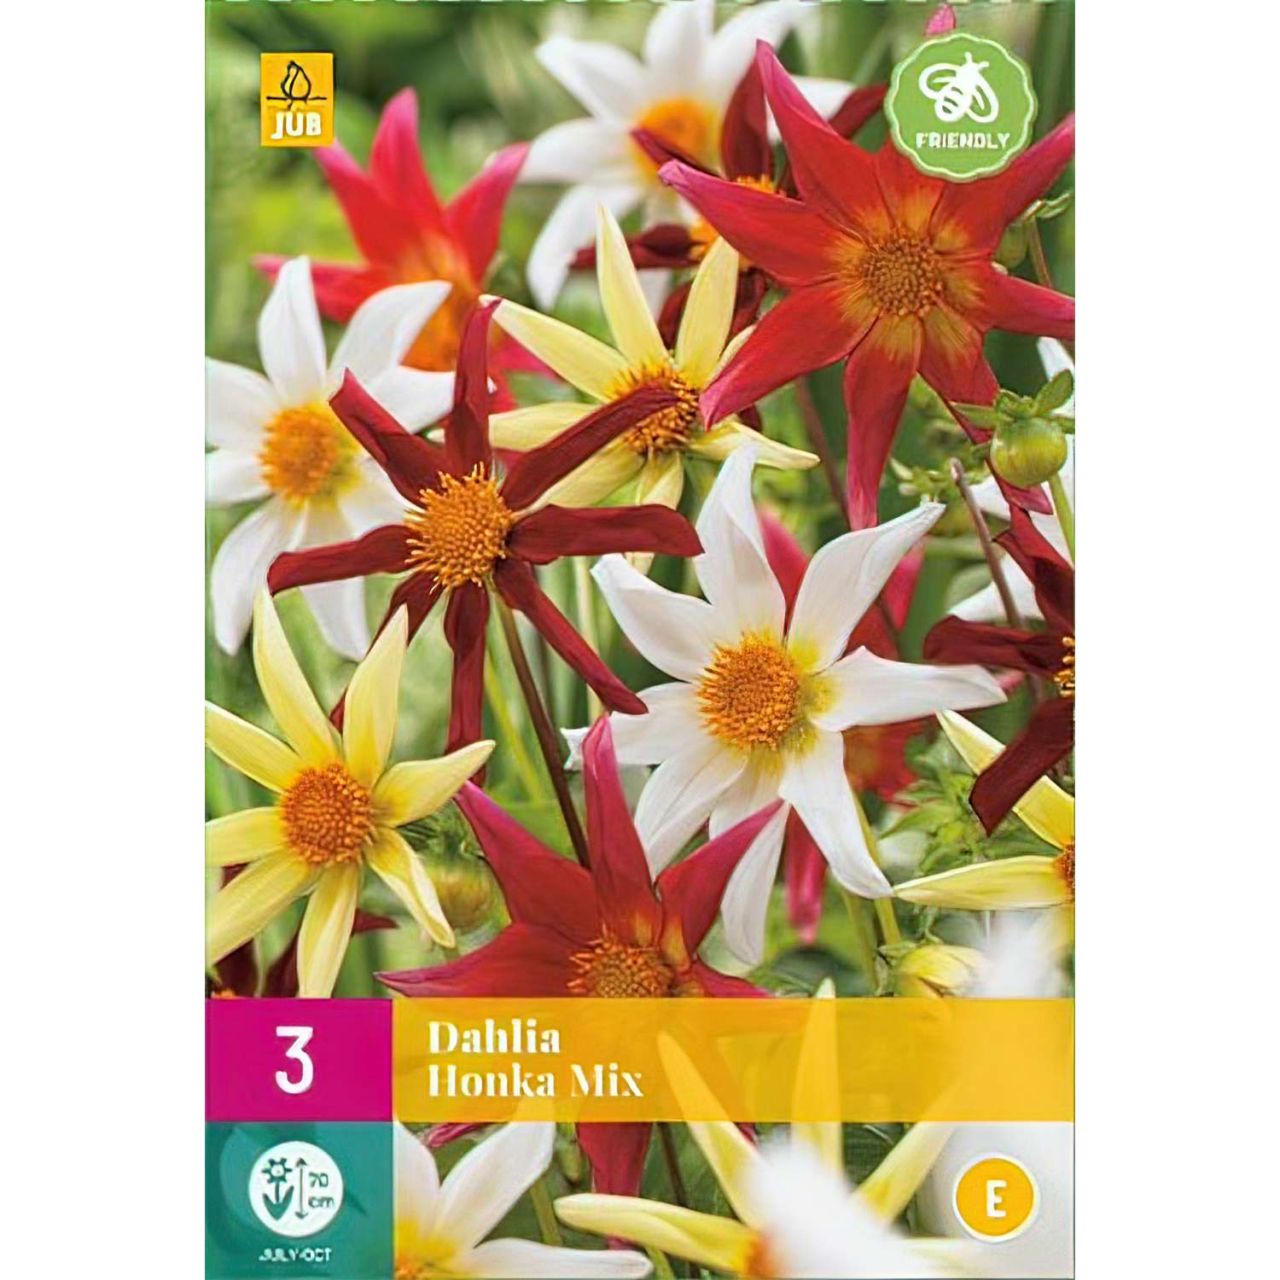 Kategorie <b>Frühlings-Blumenzwiebeln </b> - Dahlien-Mischung 'Honka Mix' - 3 Stück - Dahlia 'Honka Mix'